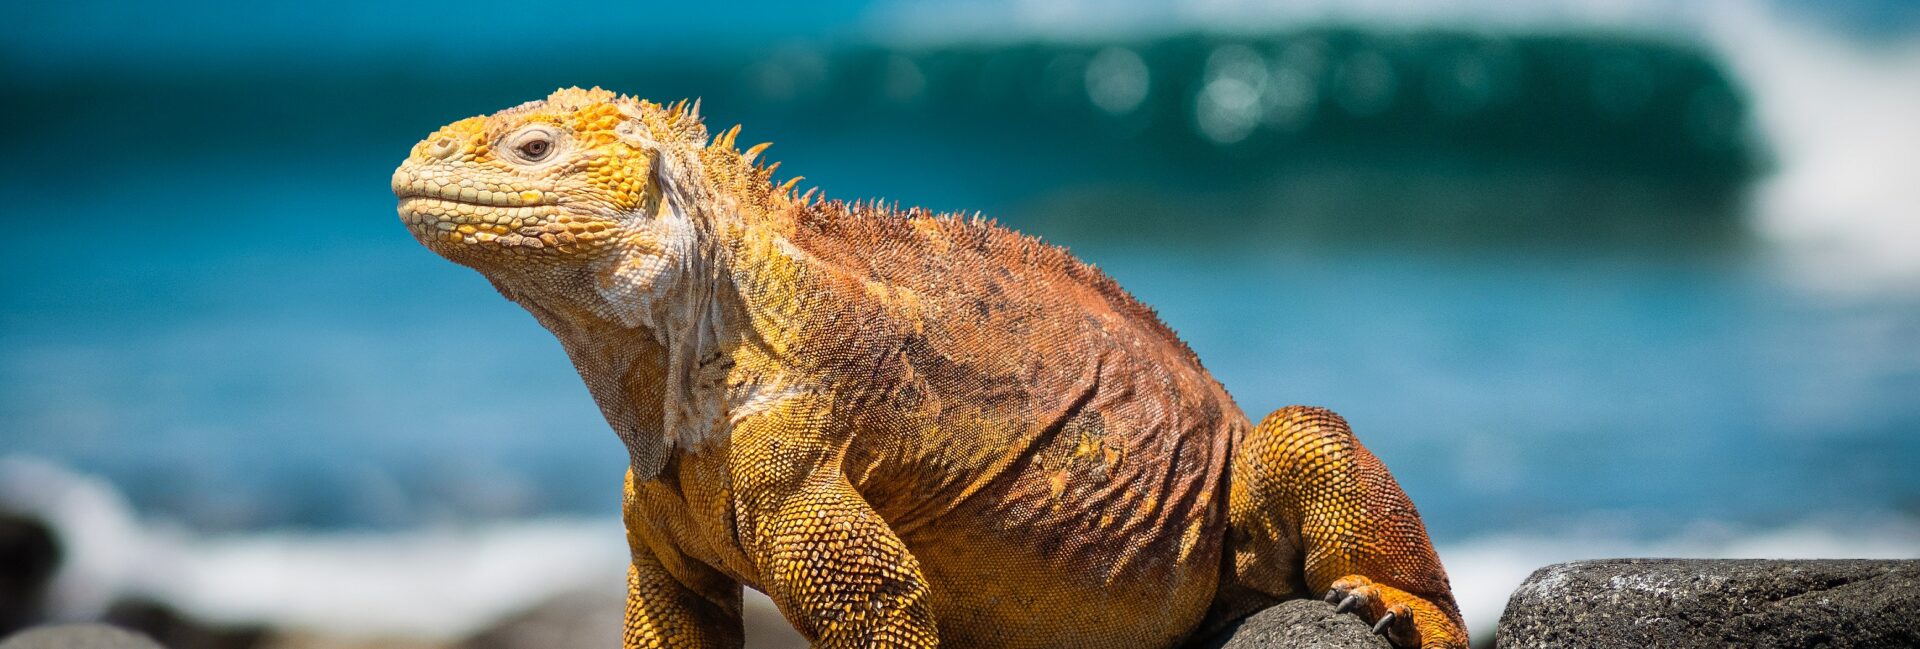 Iguane des Galapagos